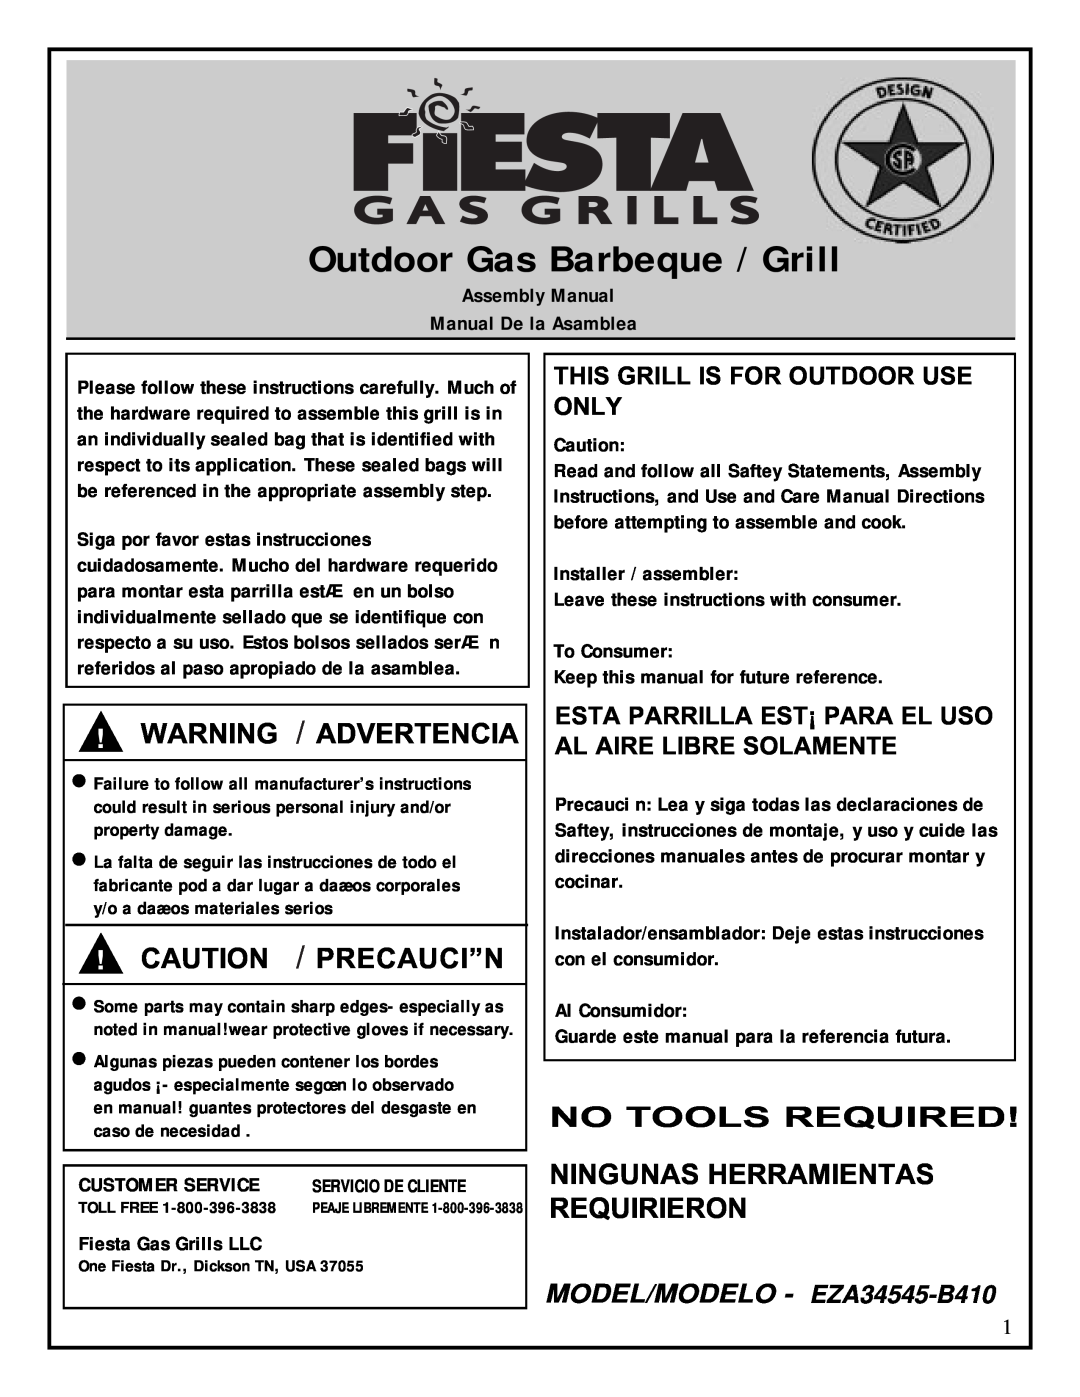 Fiesta EZA34545-B410 manual Ningunas Herramientas Requirieron, Outdoor Gas Barbeque / Grill, Warning / Advertencia 